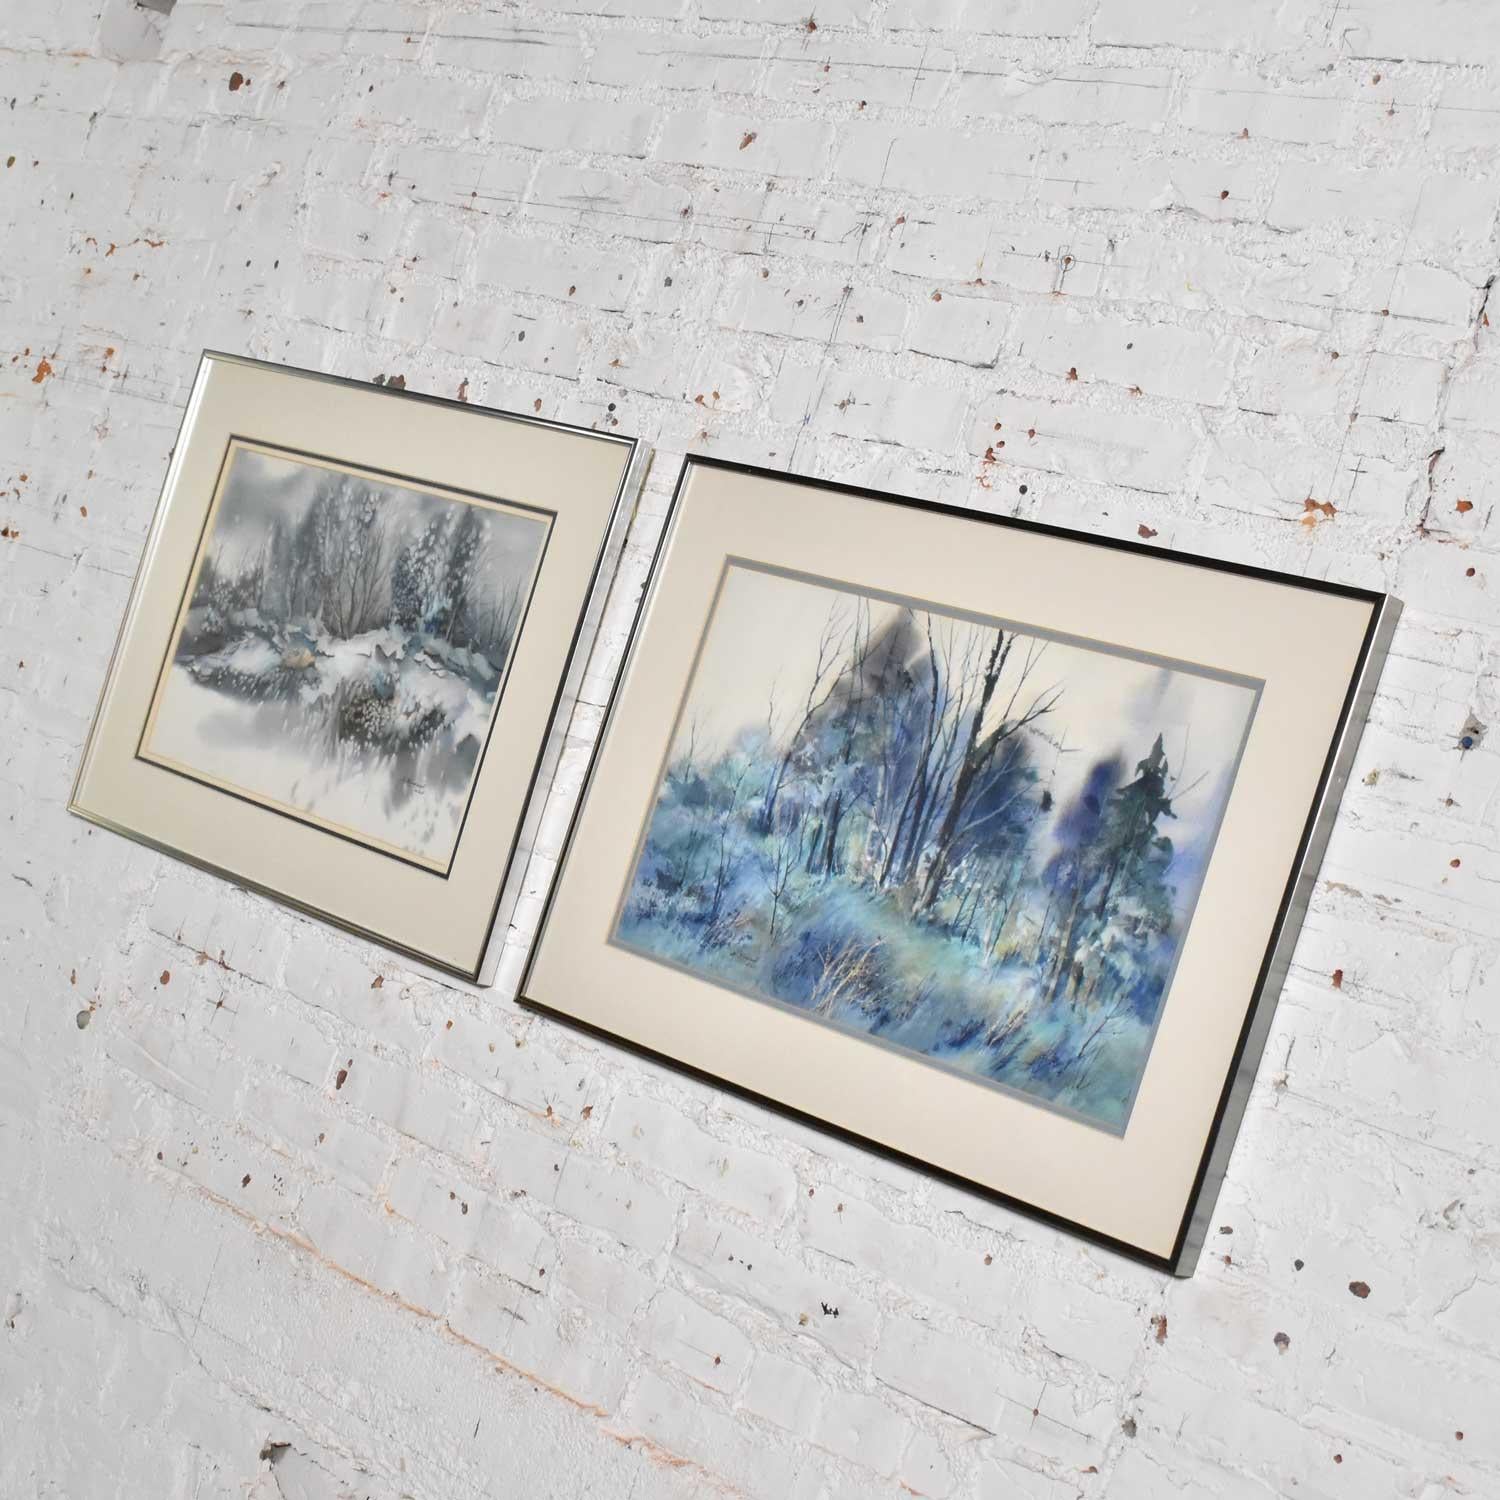 Hermoso par de acuarelas que representan cada una un paisaje invernal diferente, de Dorothy M. Reece Kordash. Están en magníficas condiciones vintage y en sus marcos originales. Por favor, mira las fotos, circa 1970s-1980s.

¡Vaya! Estamos